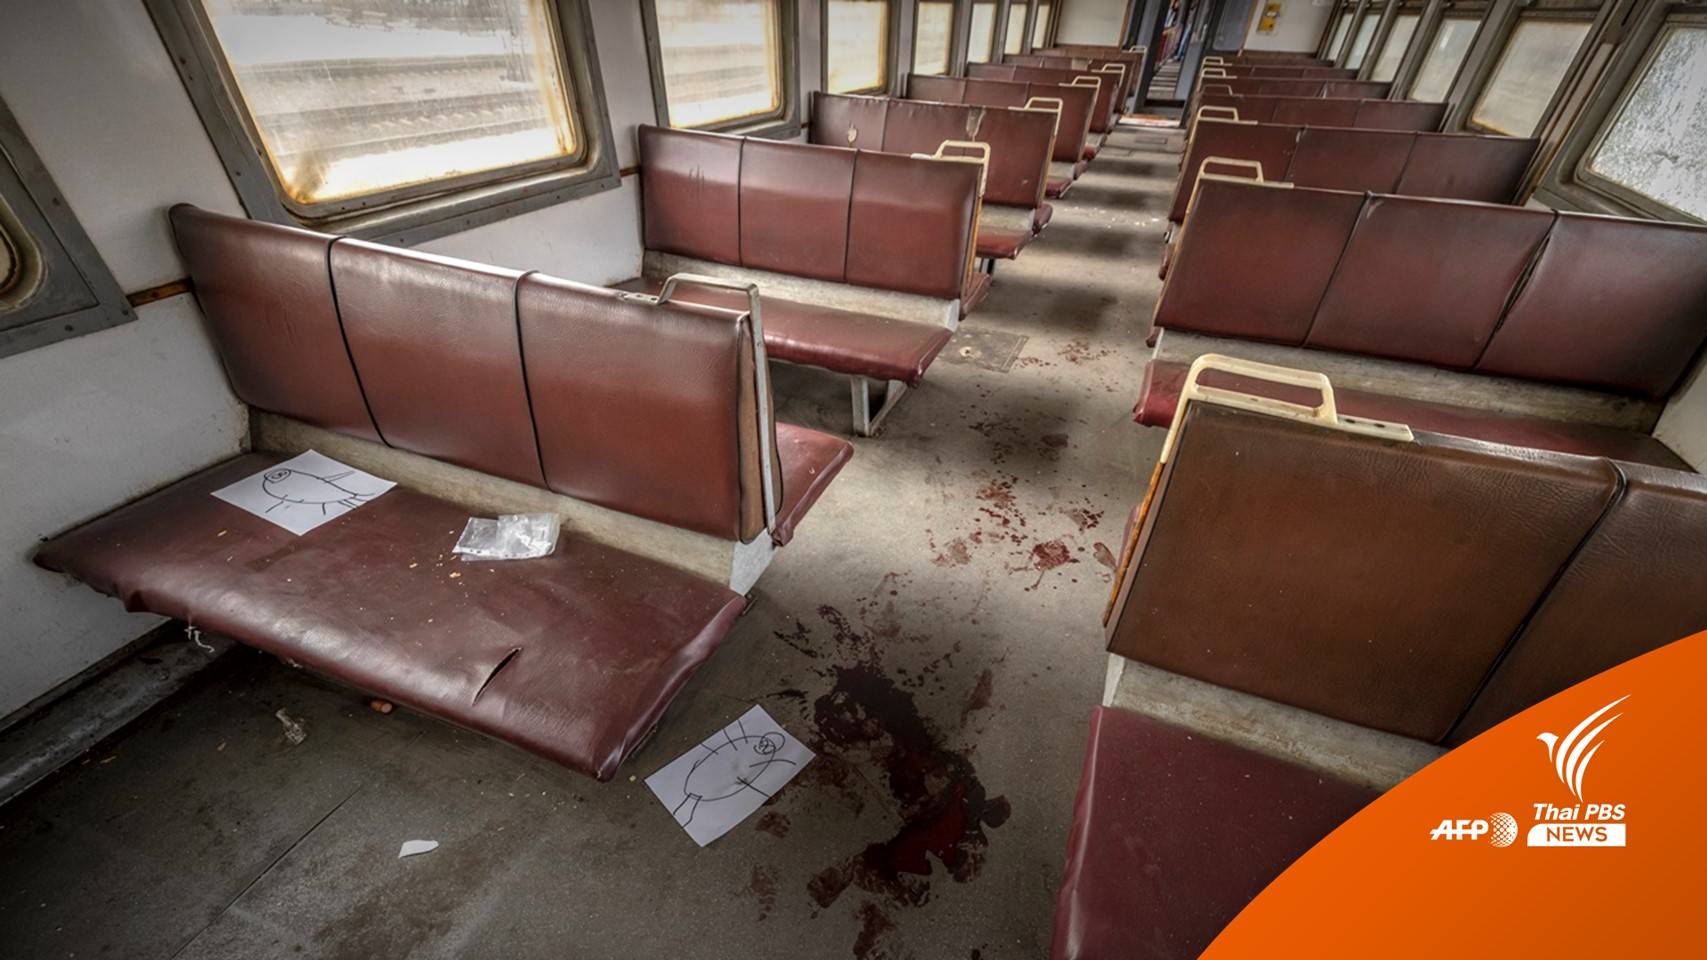 ยอดตายโจมตีสถานีรถไฟยูเครนเพิ่มเป็น 52 คน รวมเด็ก 5 คน